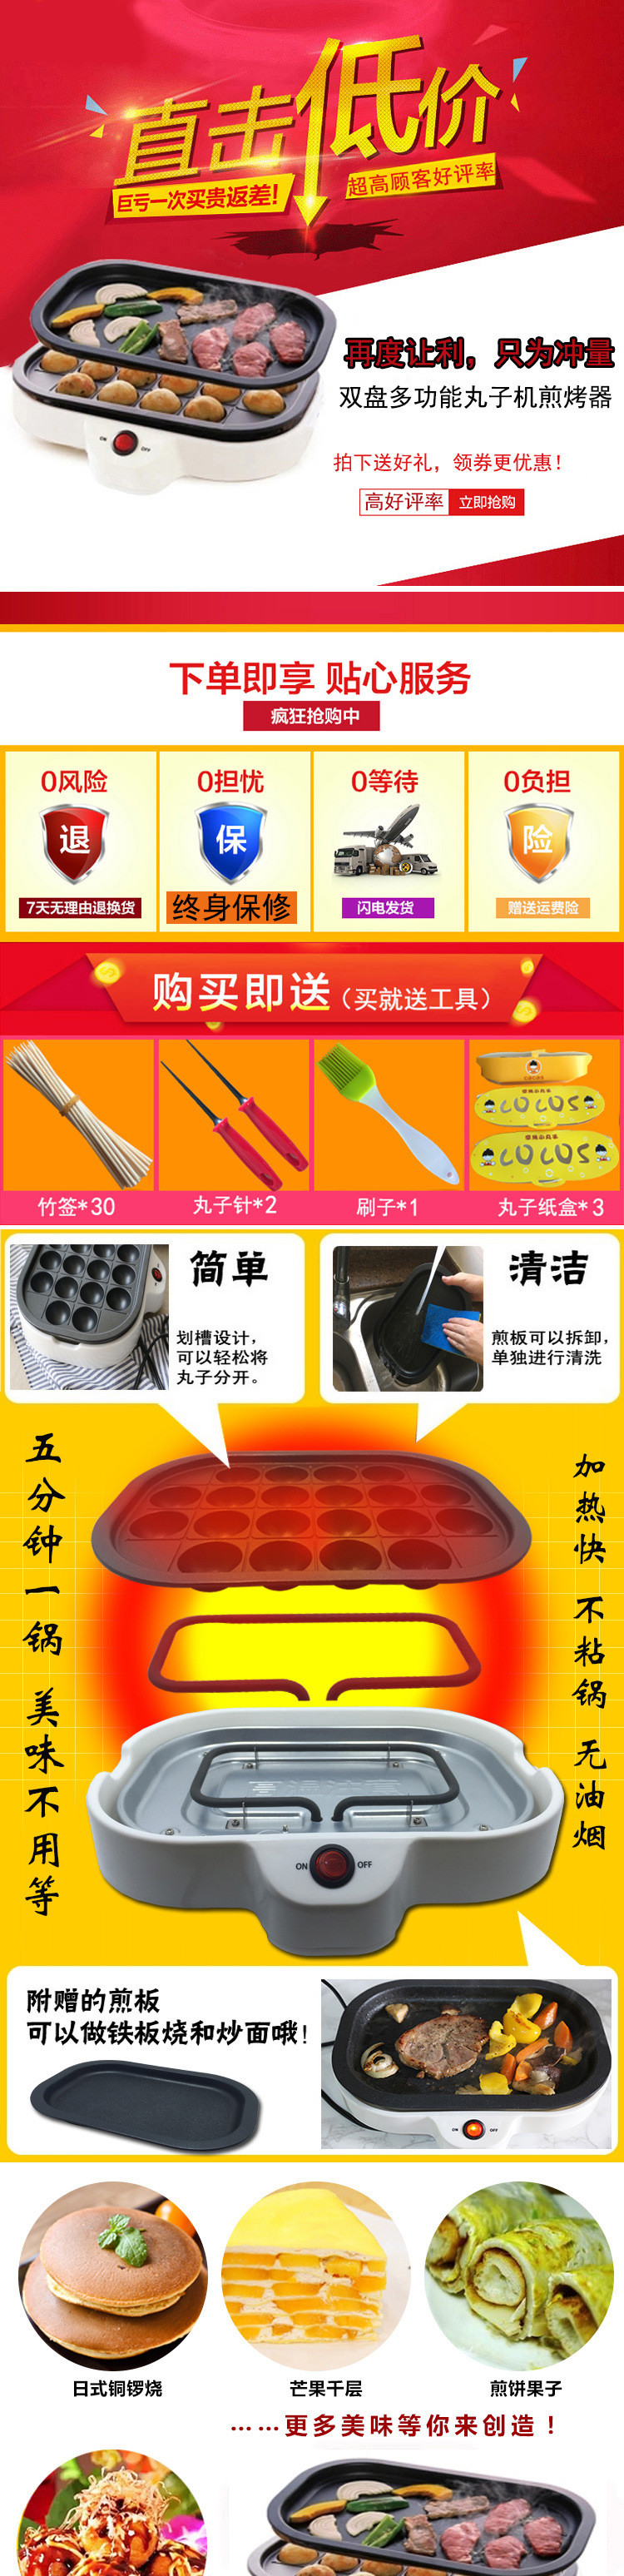 出口日本章鱼小丸子机器 铁板烧章鱼小丸子机 家用烧烤盘电烤炉示例图1